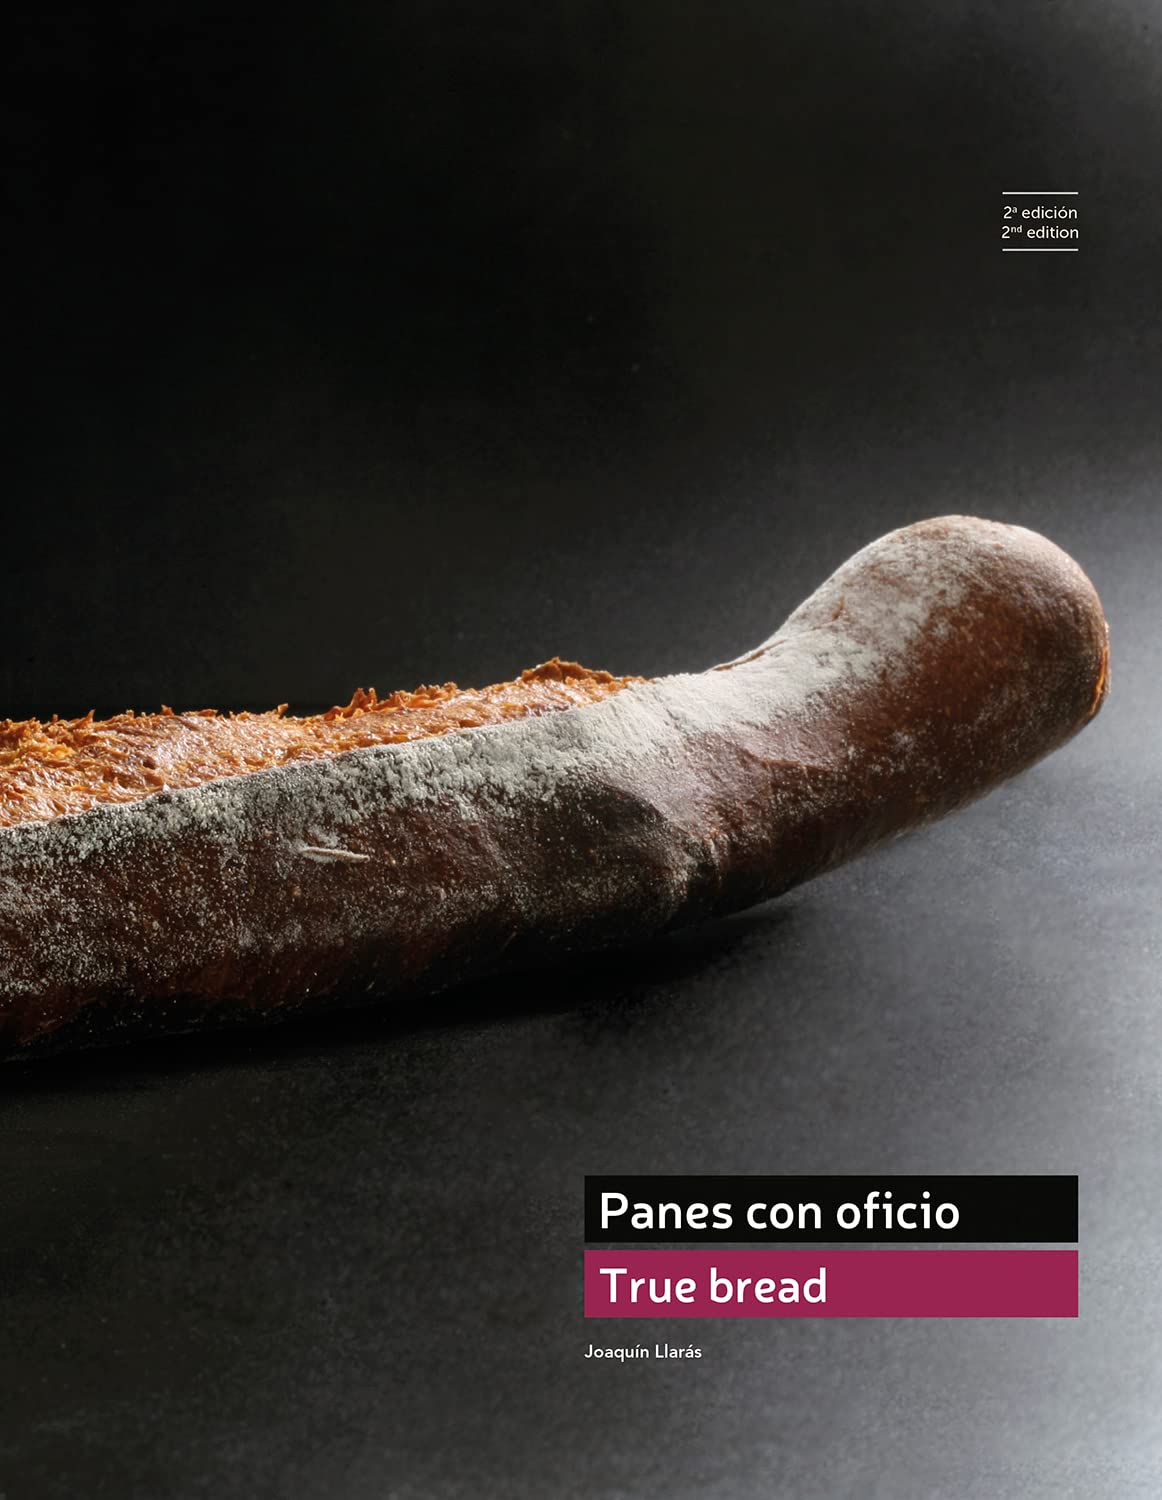 True Bread - Panes Con Oficio, 2nd Edition (Joaquin Llaras)